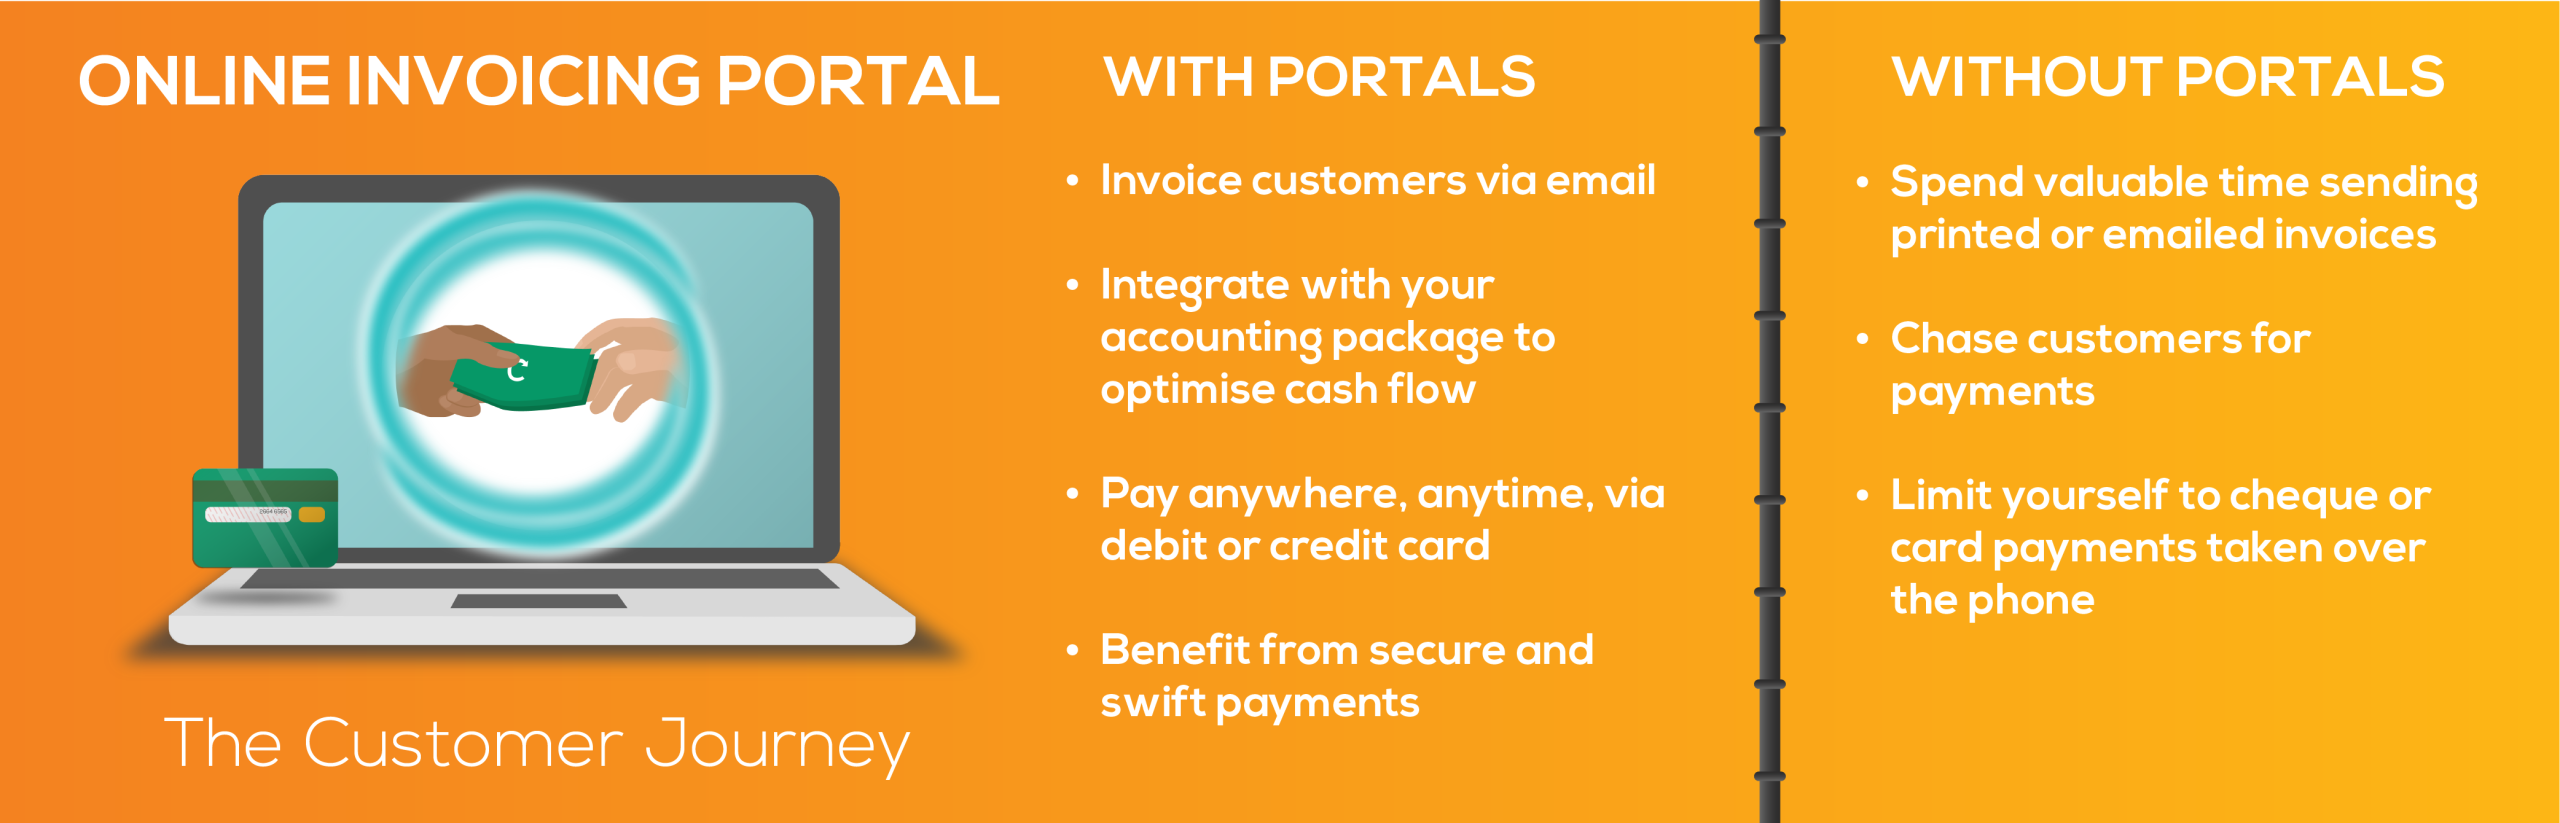 Invoicing portal